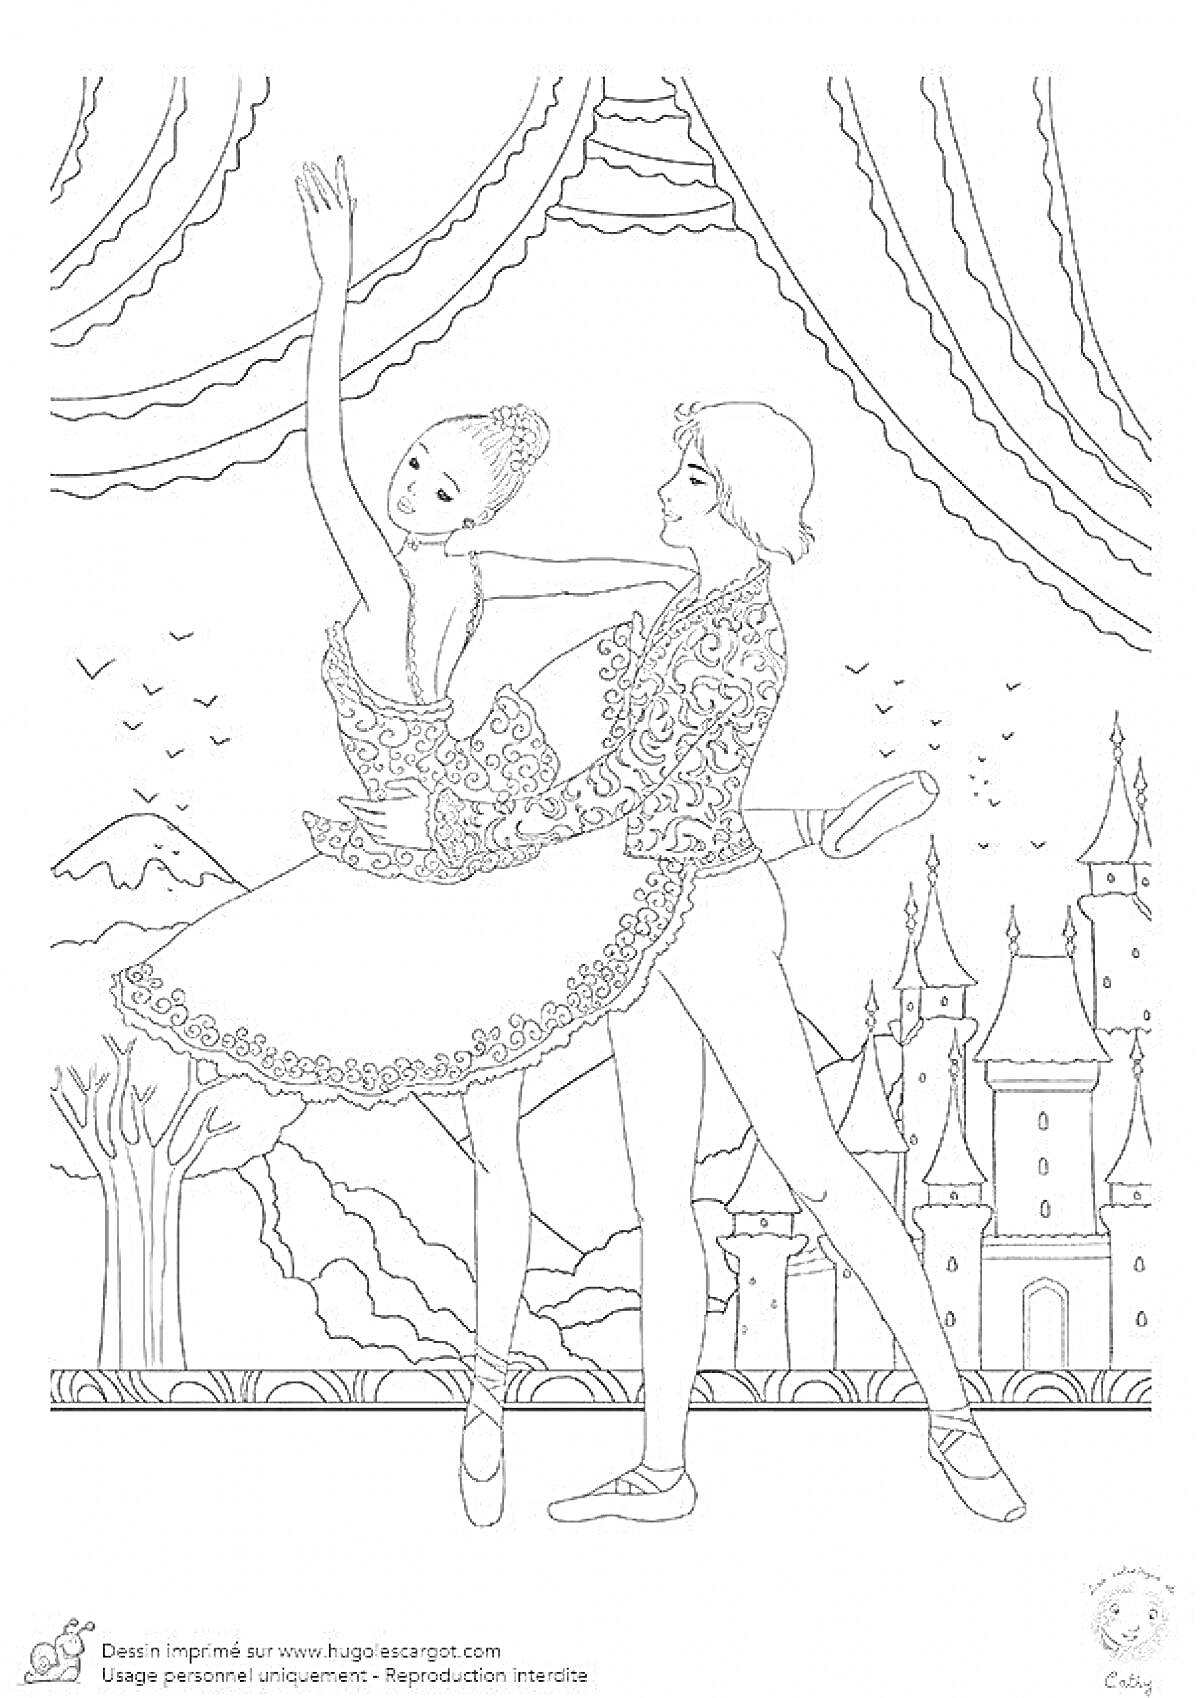 На раскраске изображено: Балет, Пара, Танцоры, Замок, Занавес, Деревья, Природа, Танец, Искусство